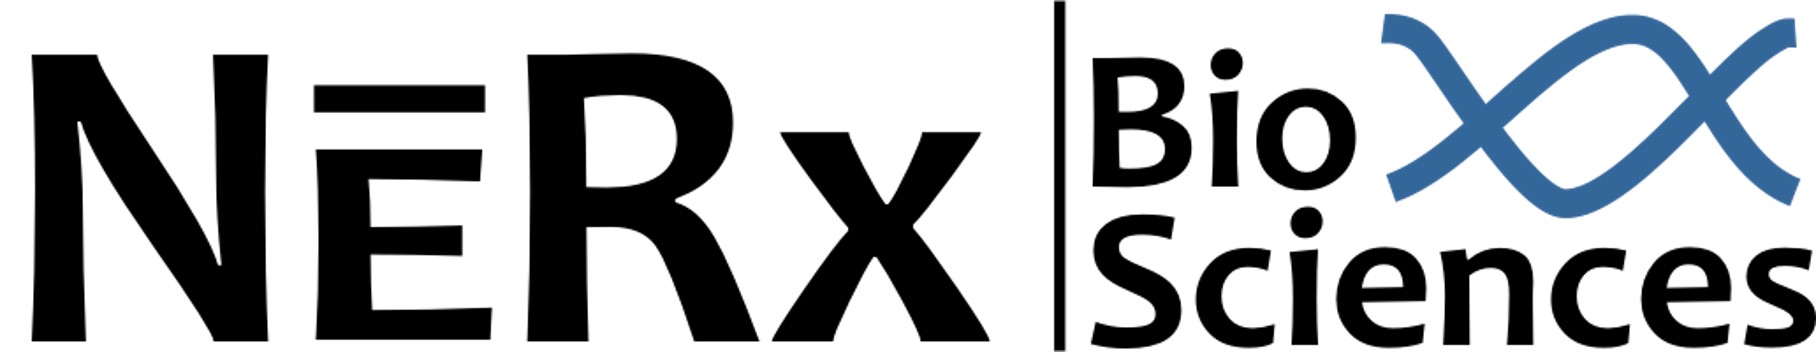 NERx BioSciences logo.